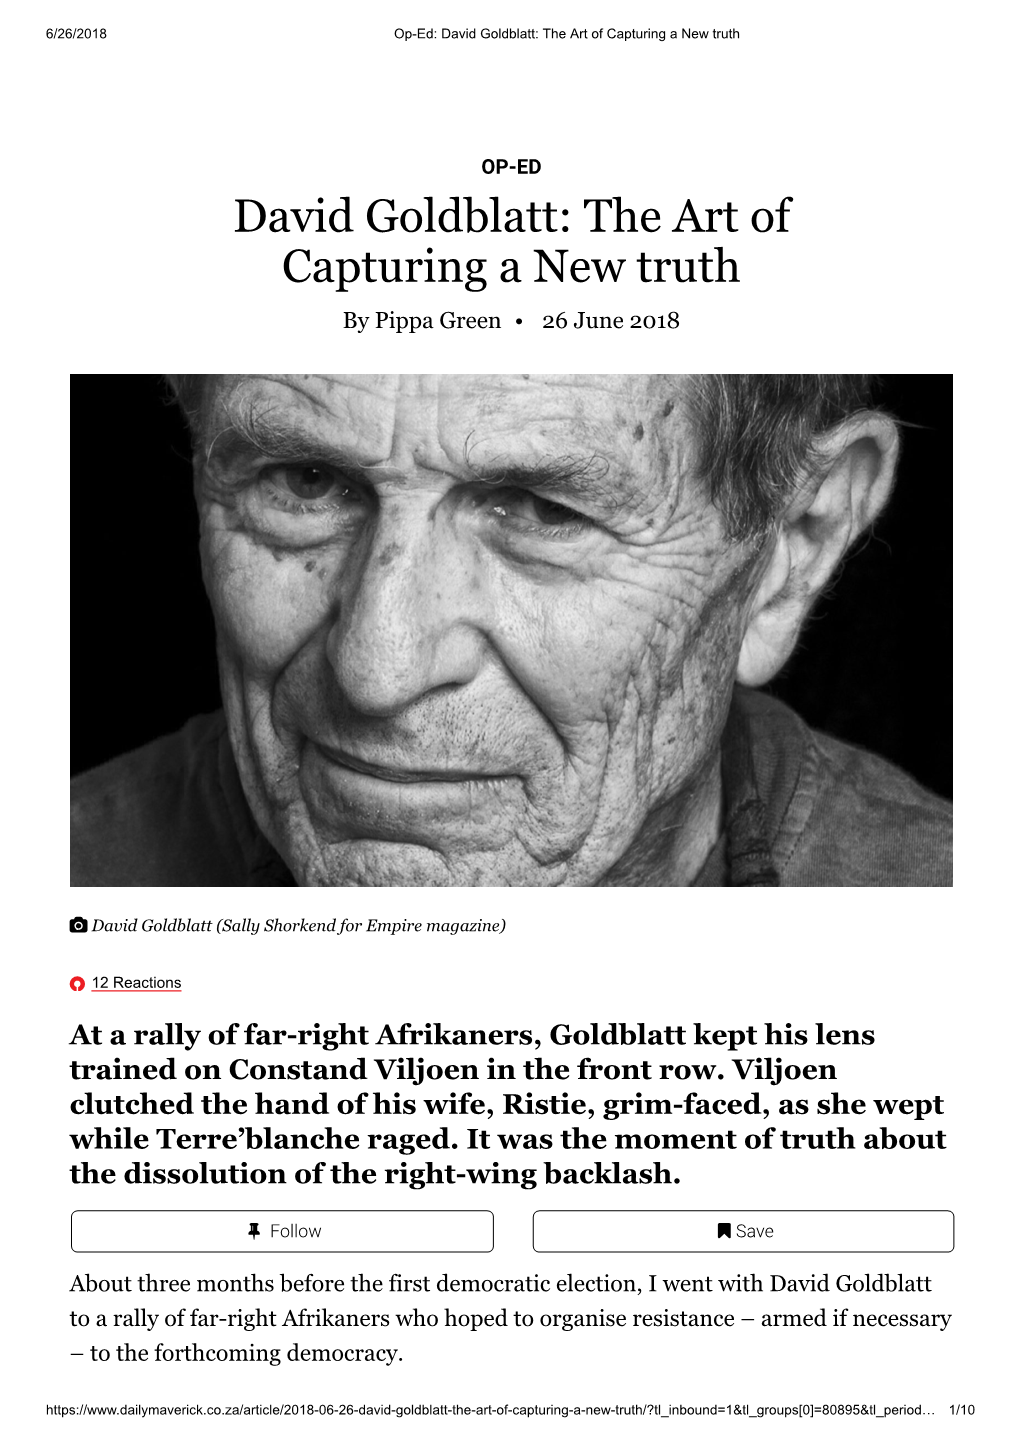 David Goldblatt: the Art of Capturing a New Truth